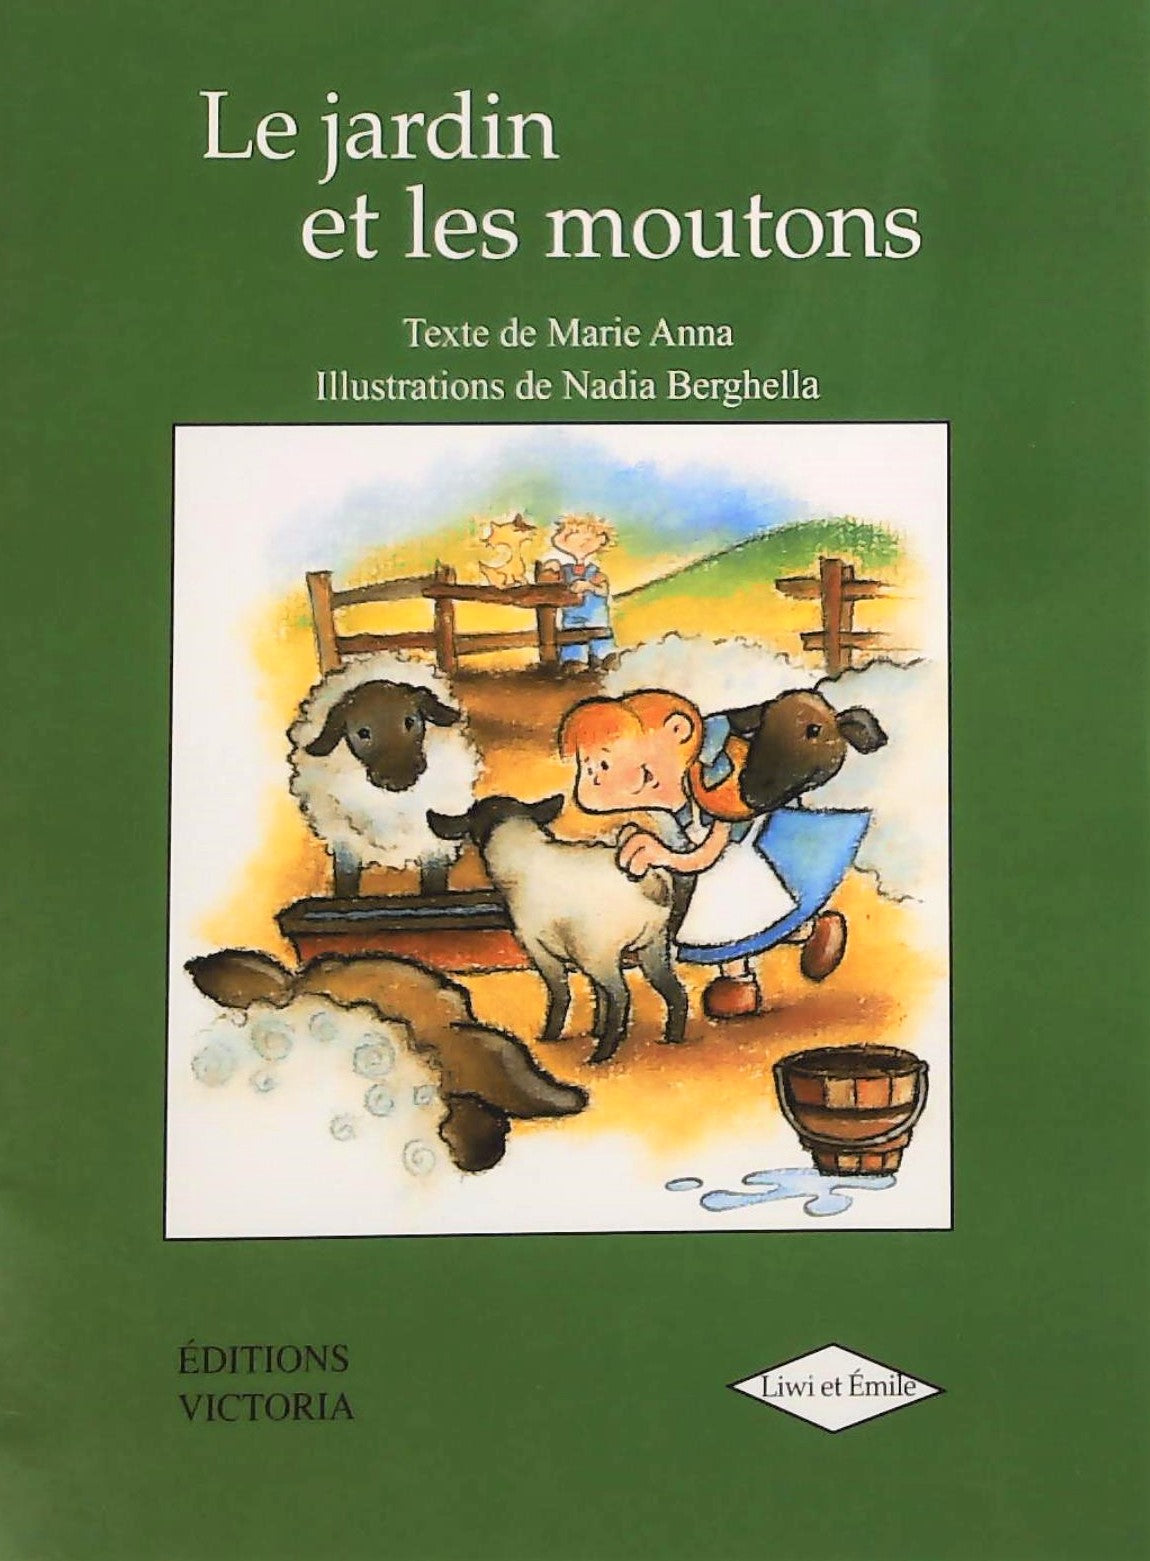 Livre ISBN 292313401X Liwi et Émilie : Le jardin et les moutons (Marie Anna)